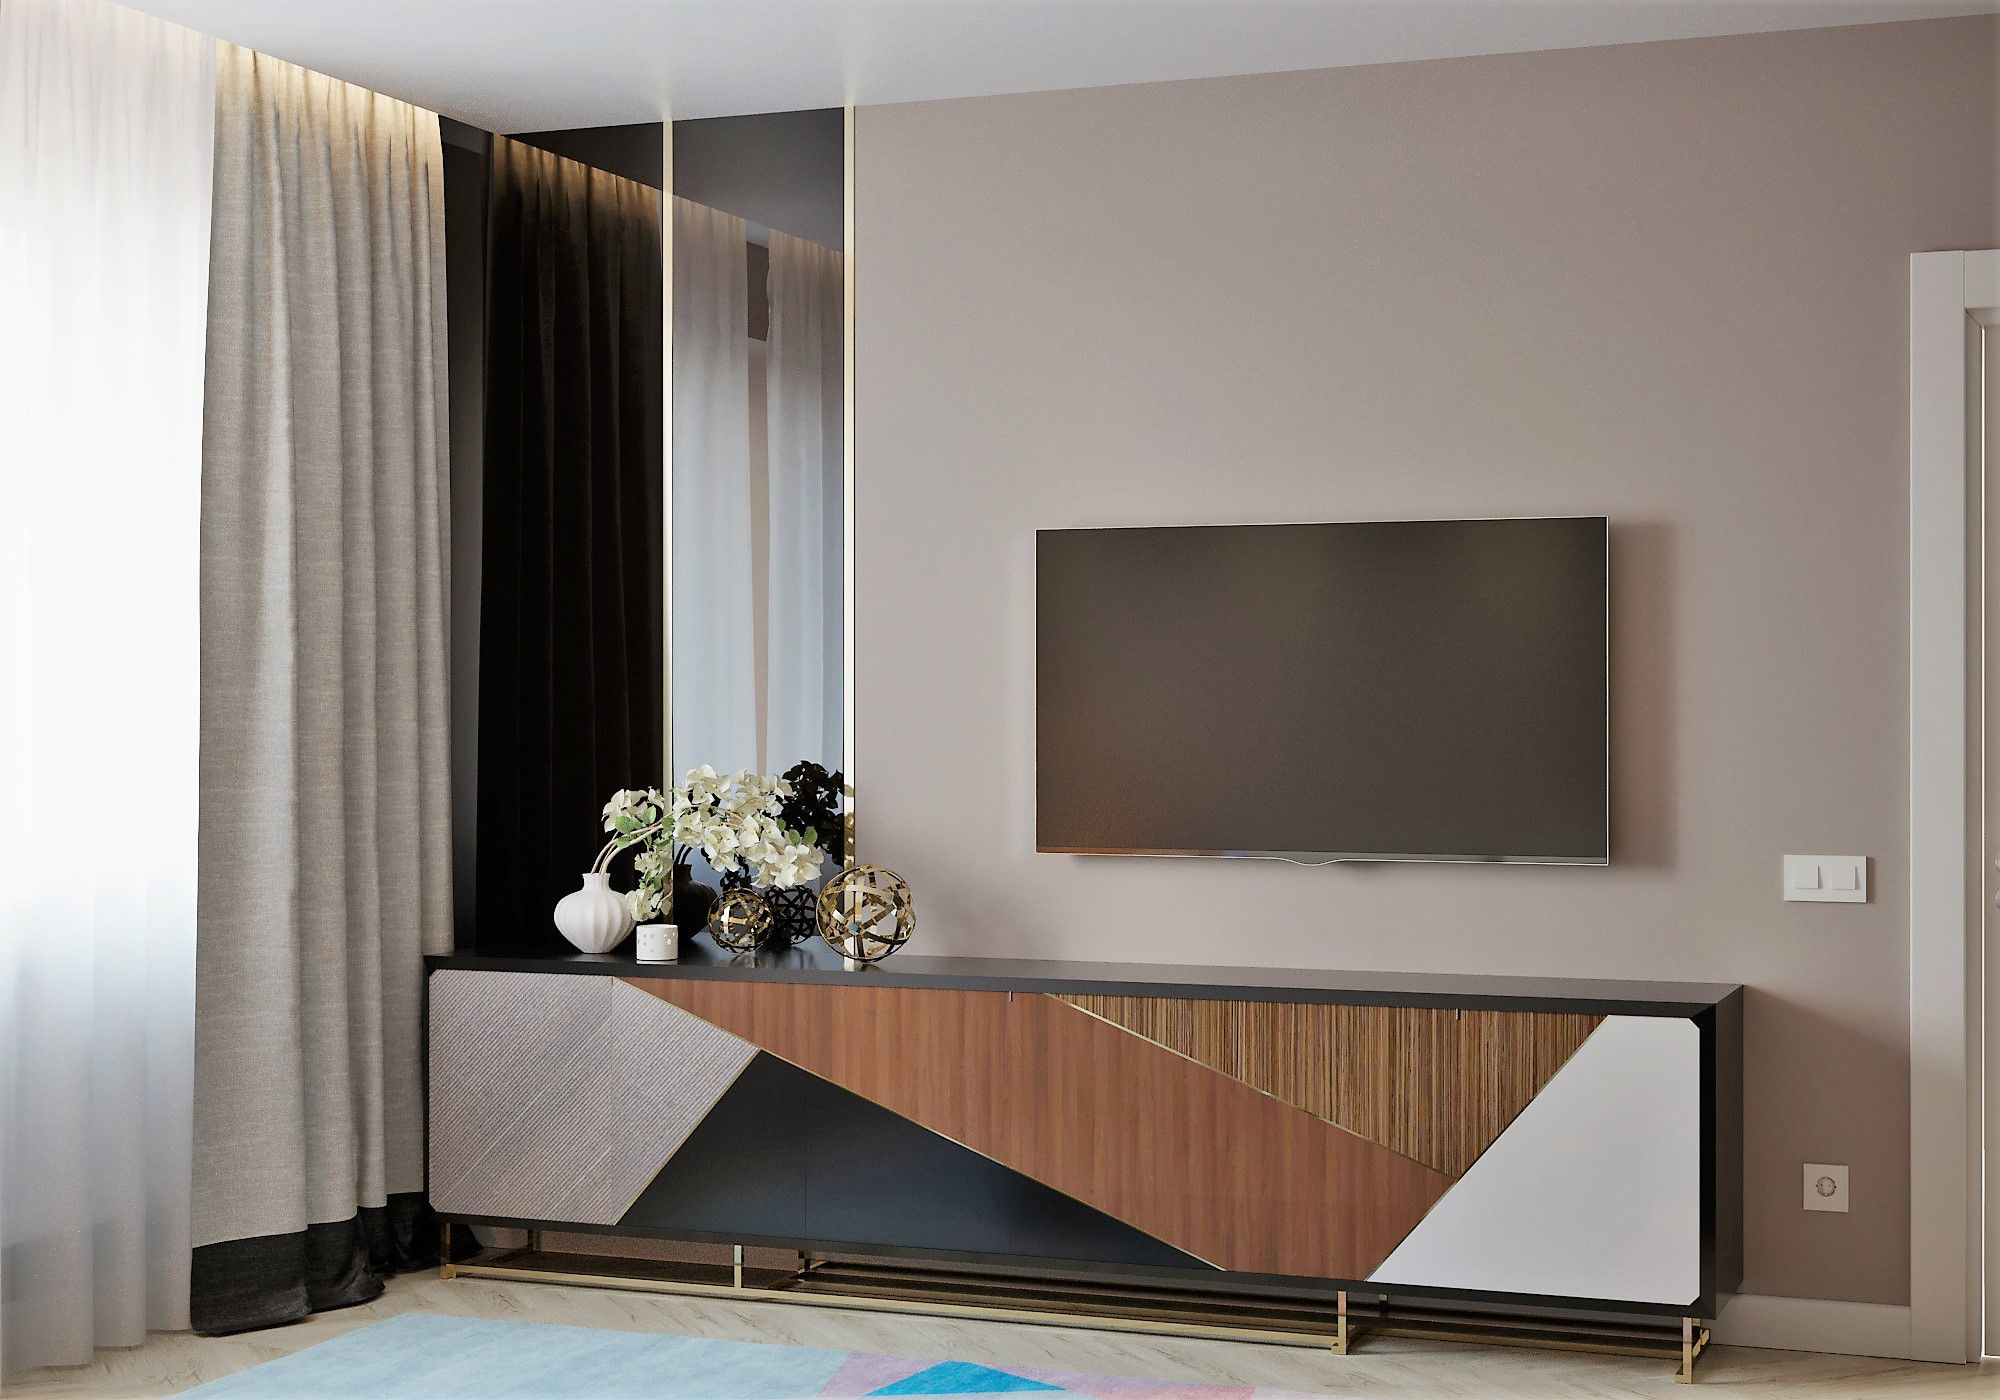 Как выбрать телевизор по размерам комнаты? Подбор в комнаты 15-18 кв. м и 20 кв. м. Определение размера для других комнат. Таблица